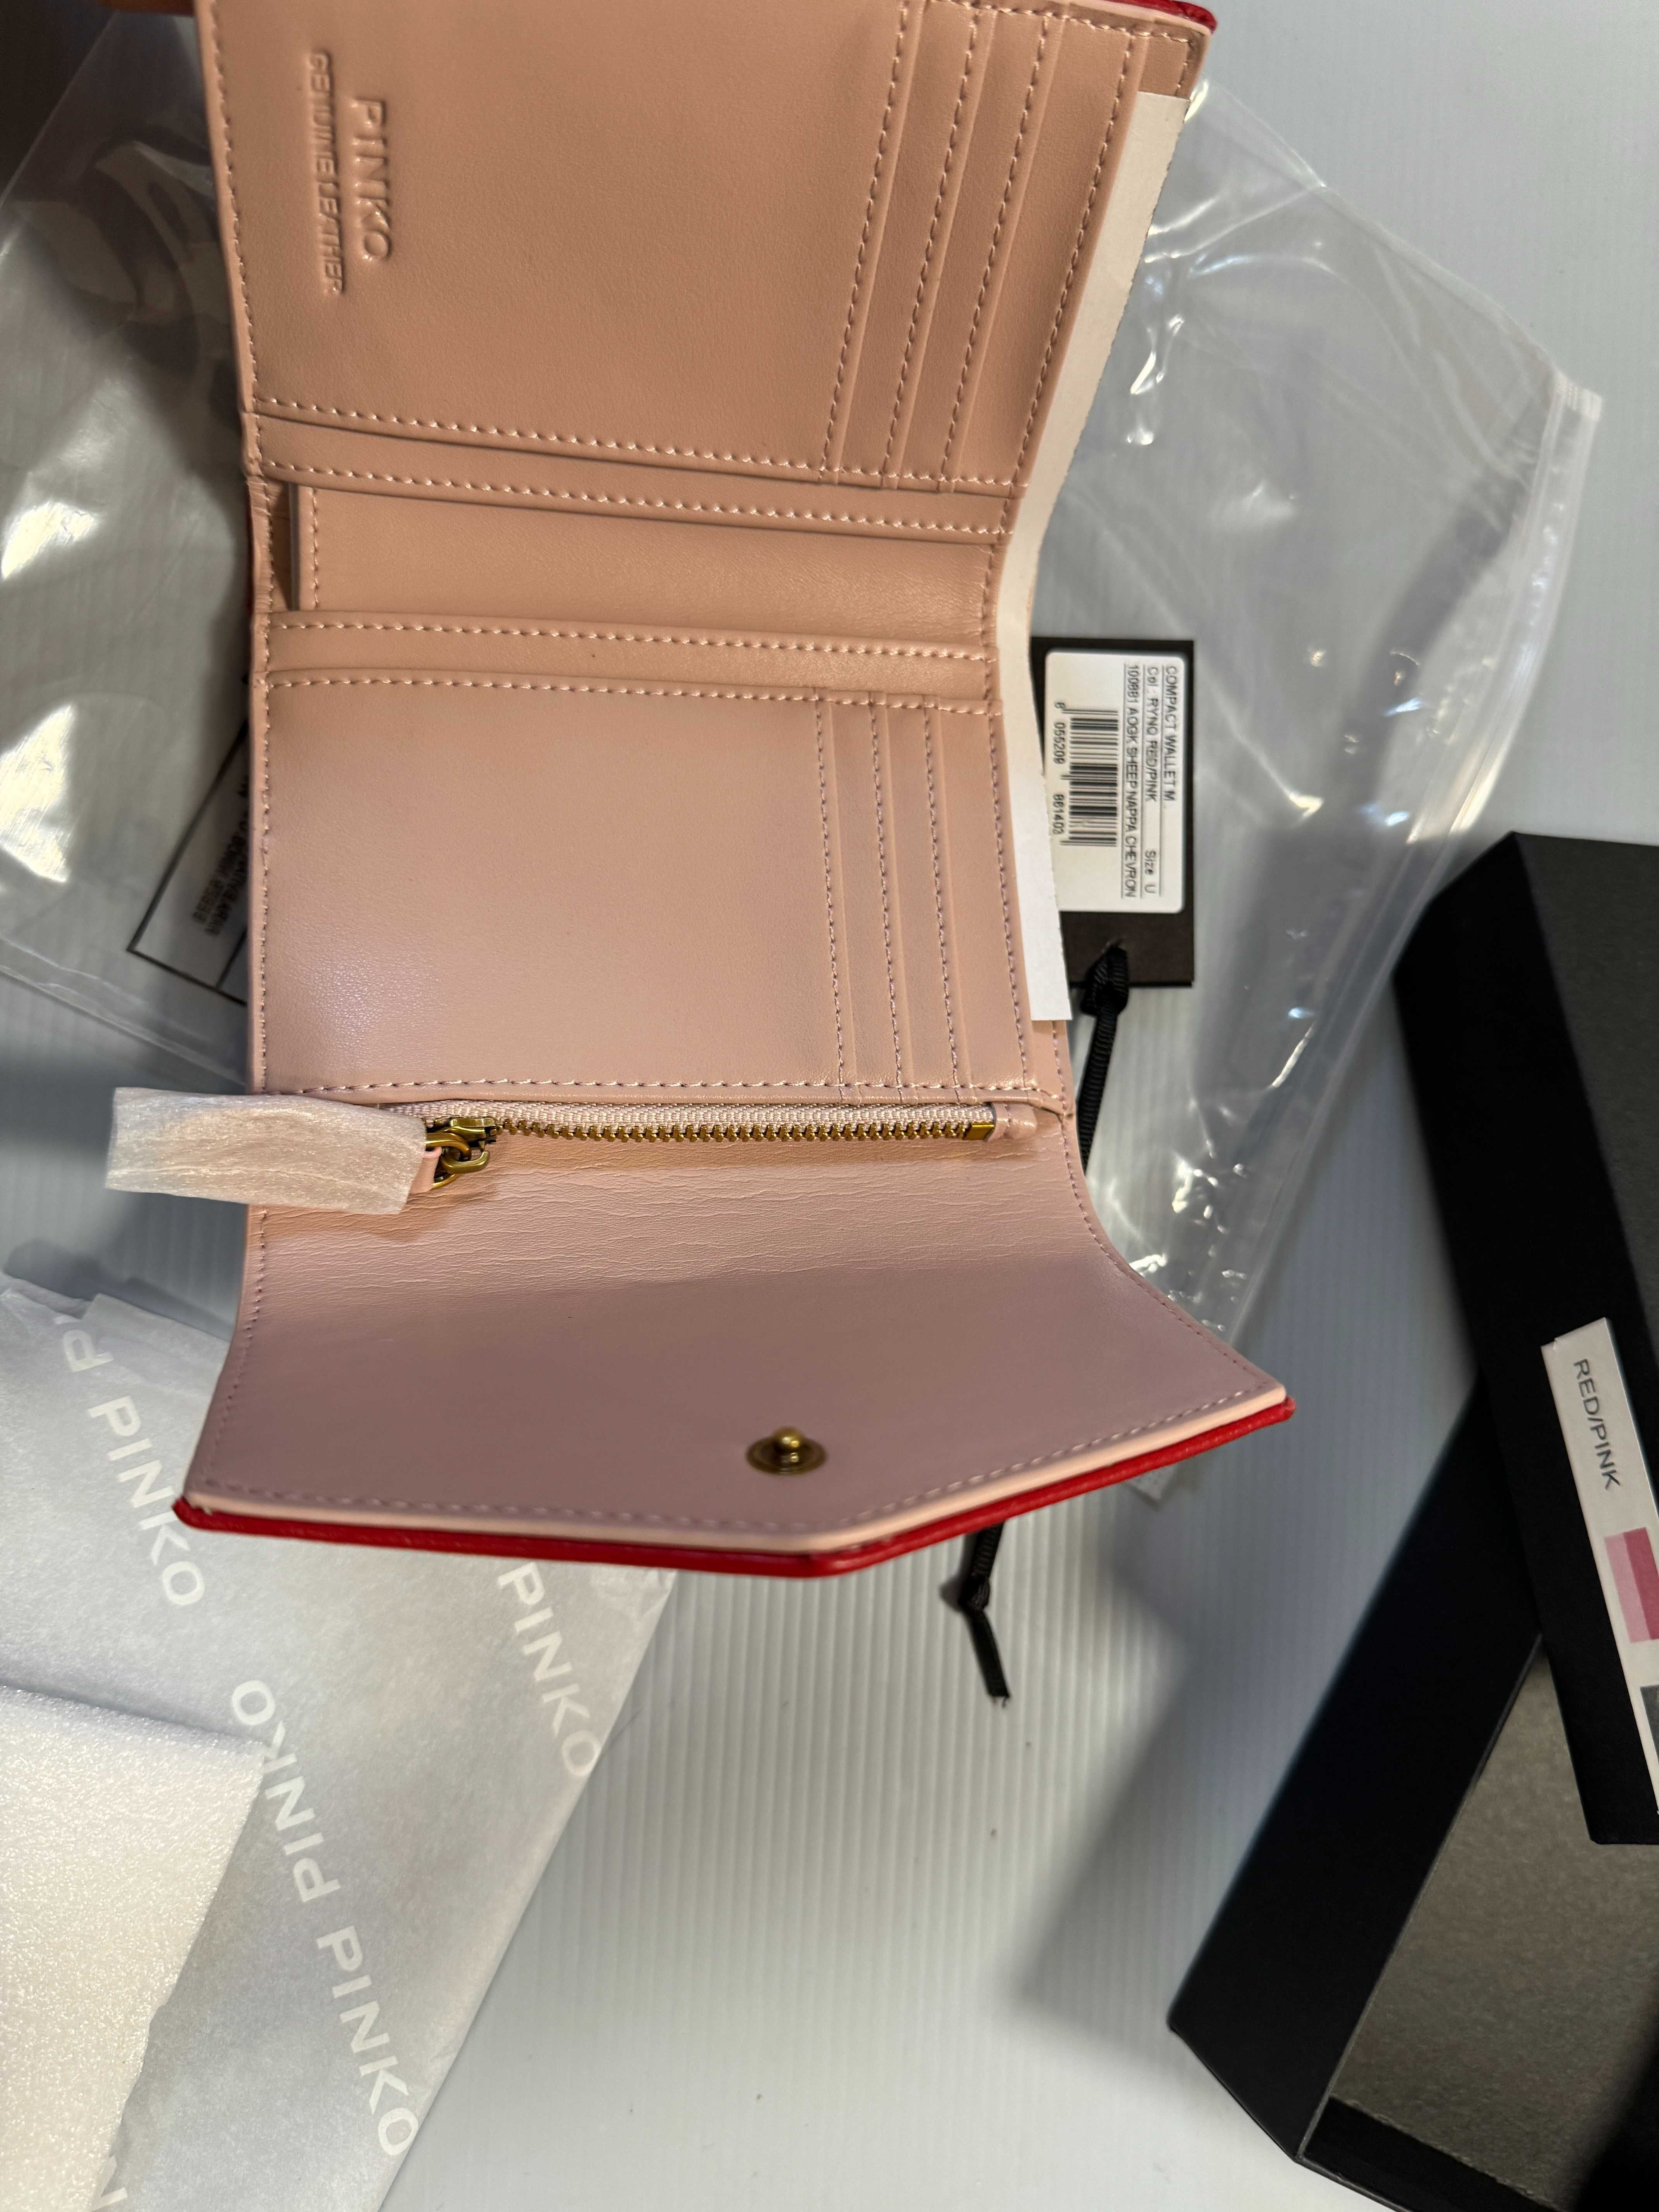 Portfel Pinko Compact Wallet czerwony,new